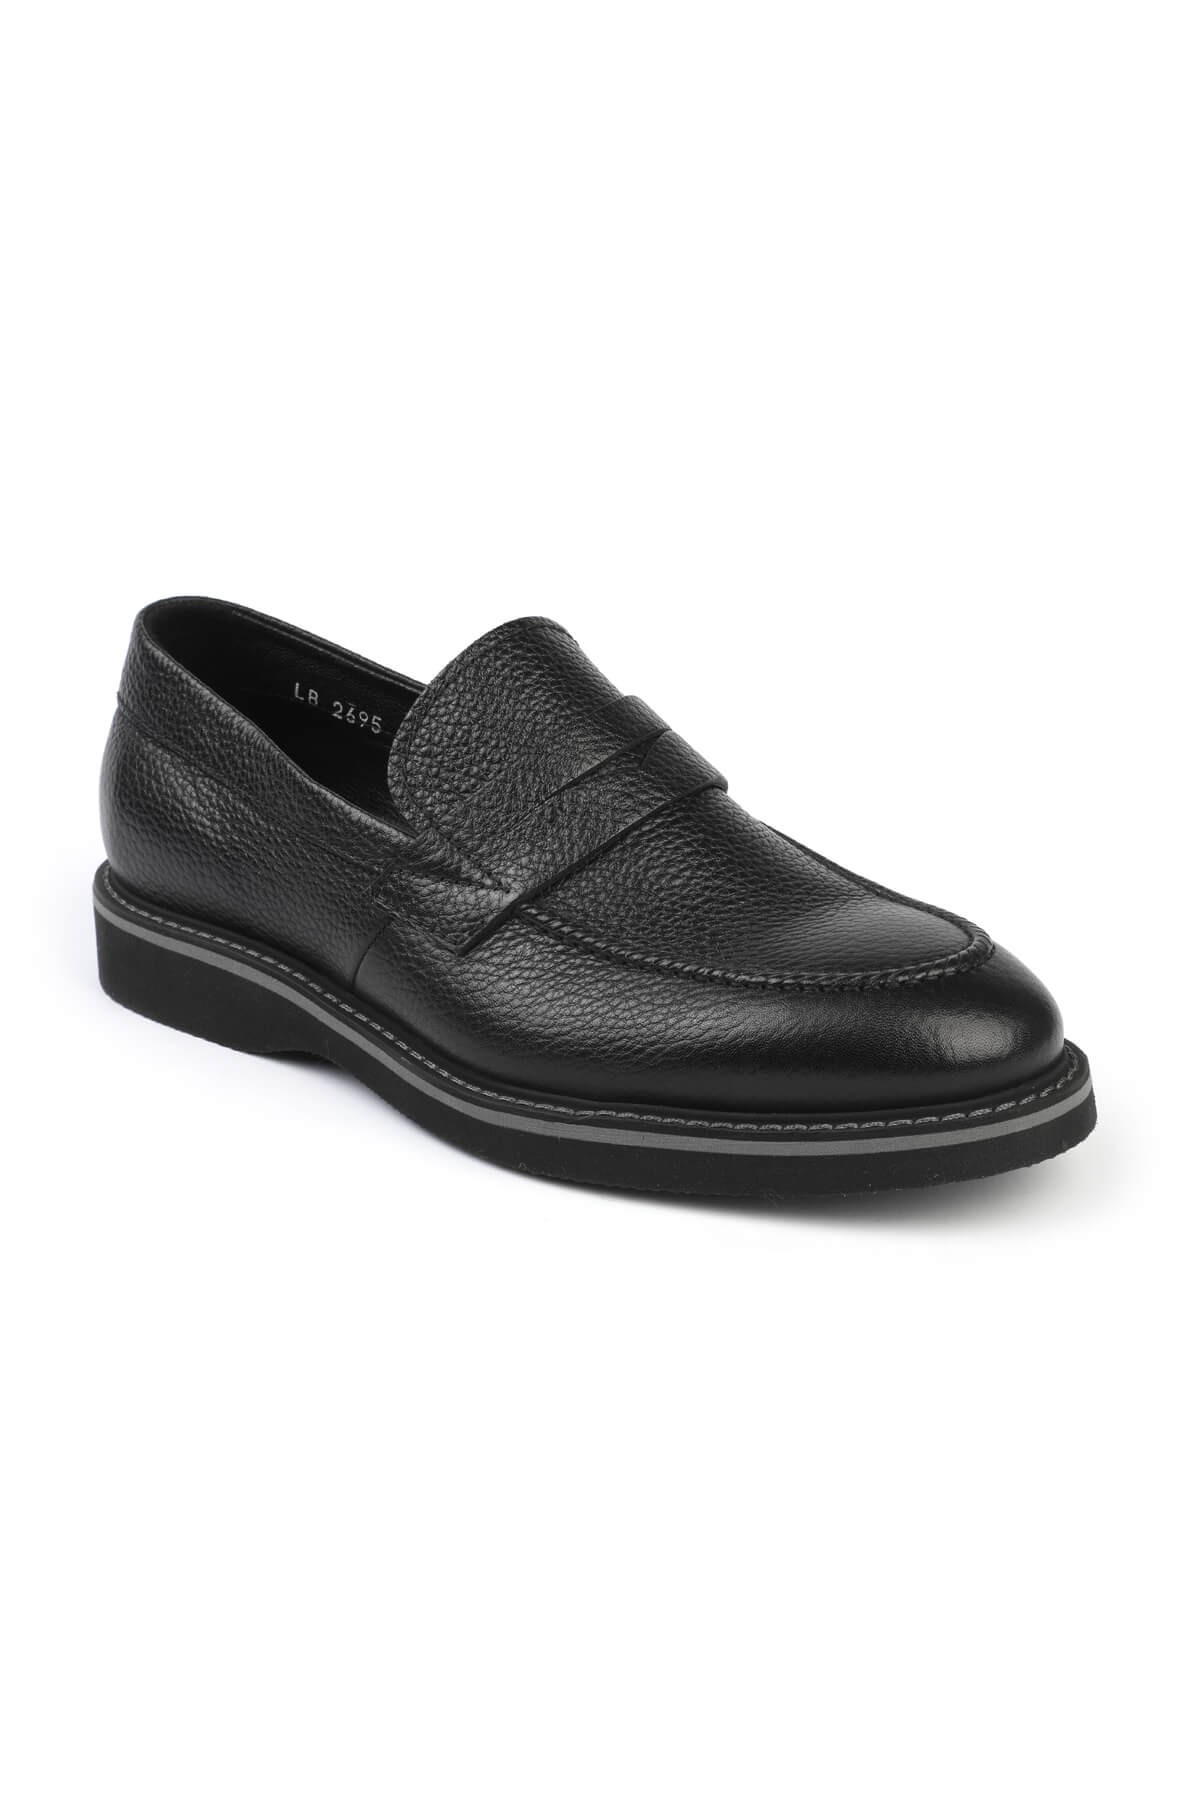 Libero 2695 Loafer Erkek Ayakkabı KAHVE - Siyah